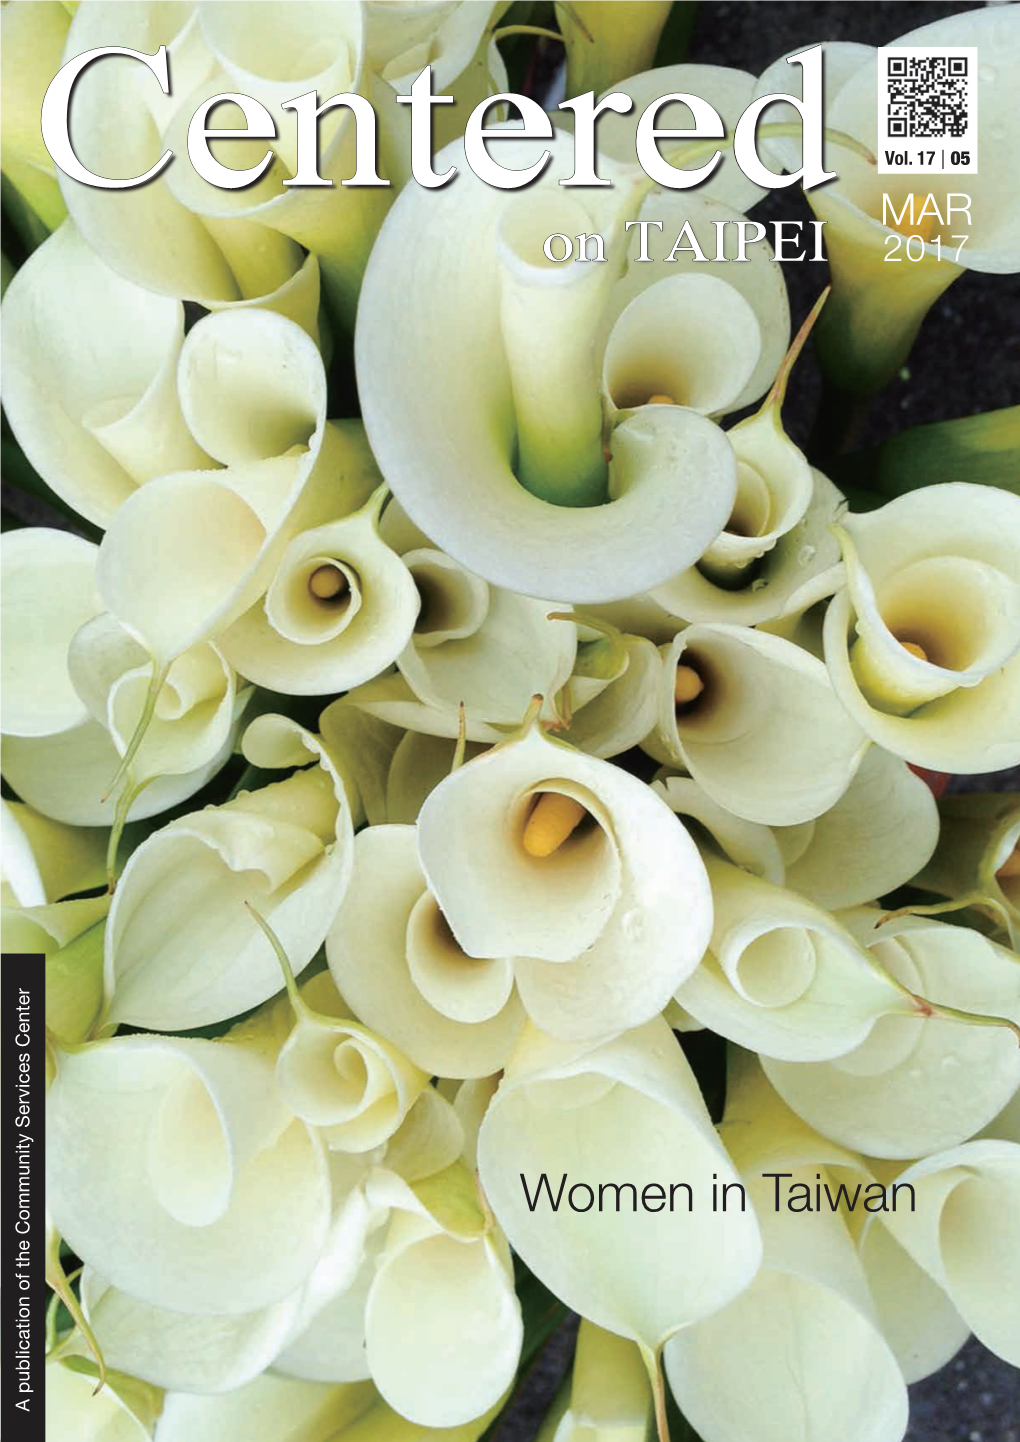 Women in Taiwan on TAIPEI MAR 2017 Vol